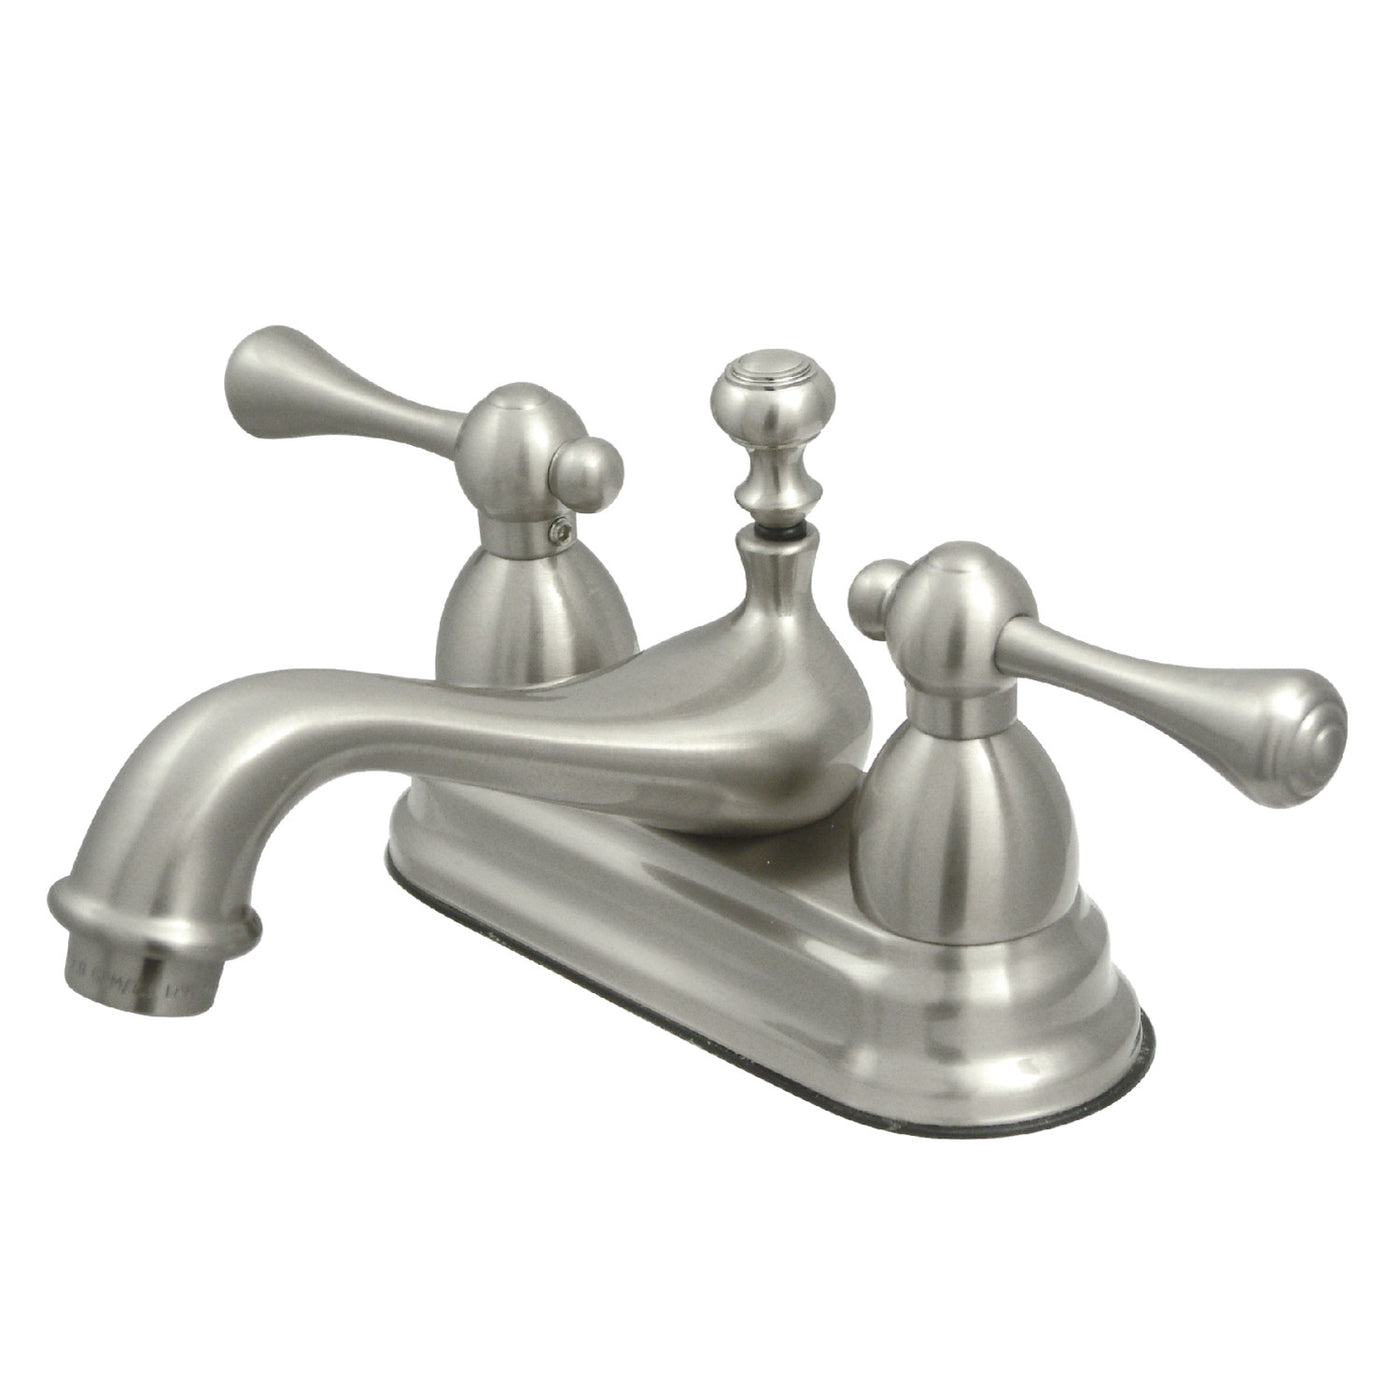 Elements of Design ES3608BL 4-Inch Centerset Bathroom Faucet, Brushed Nickel